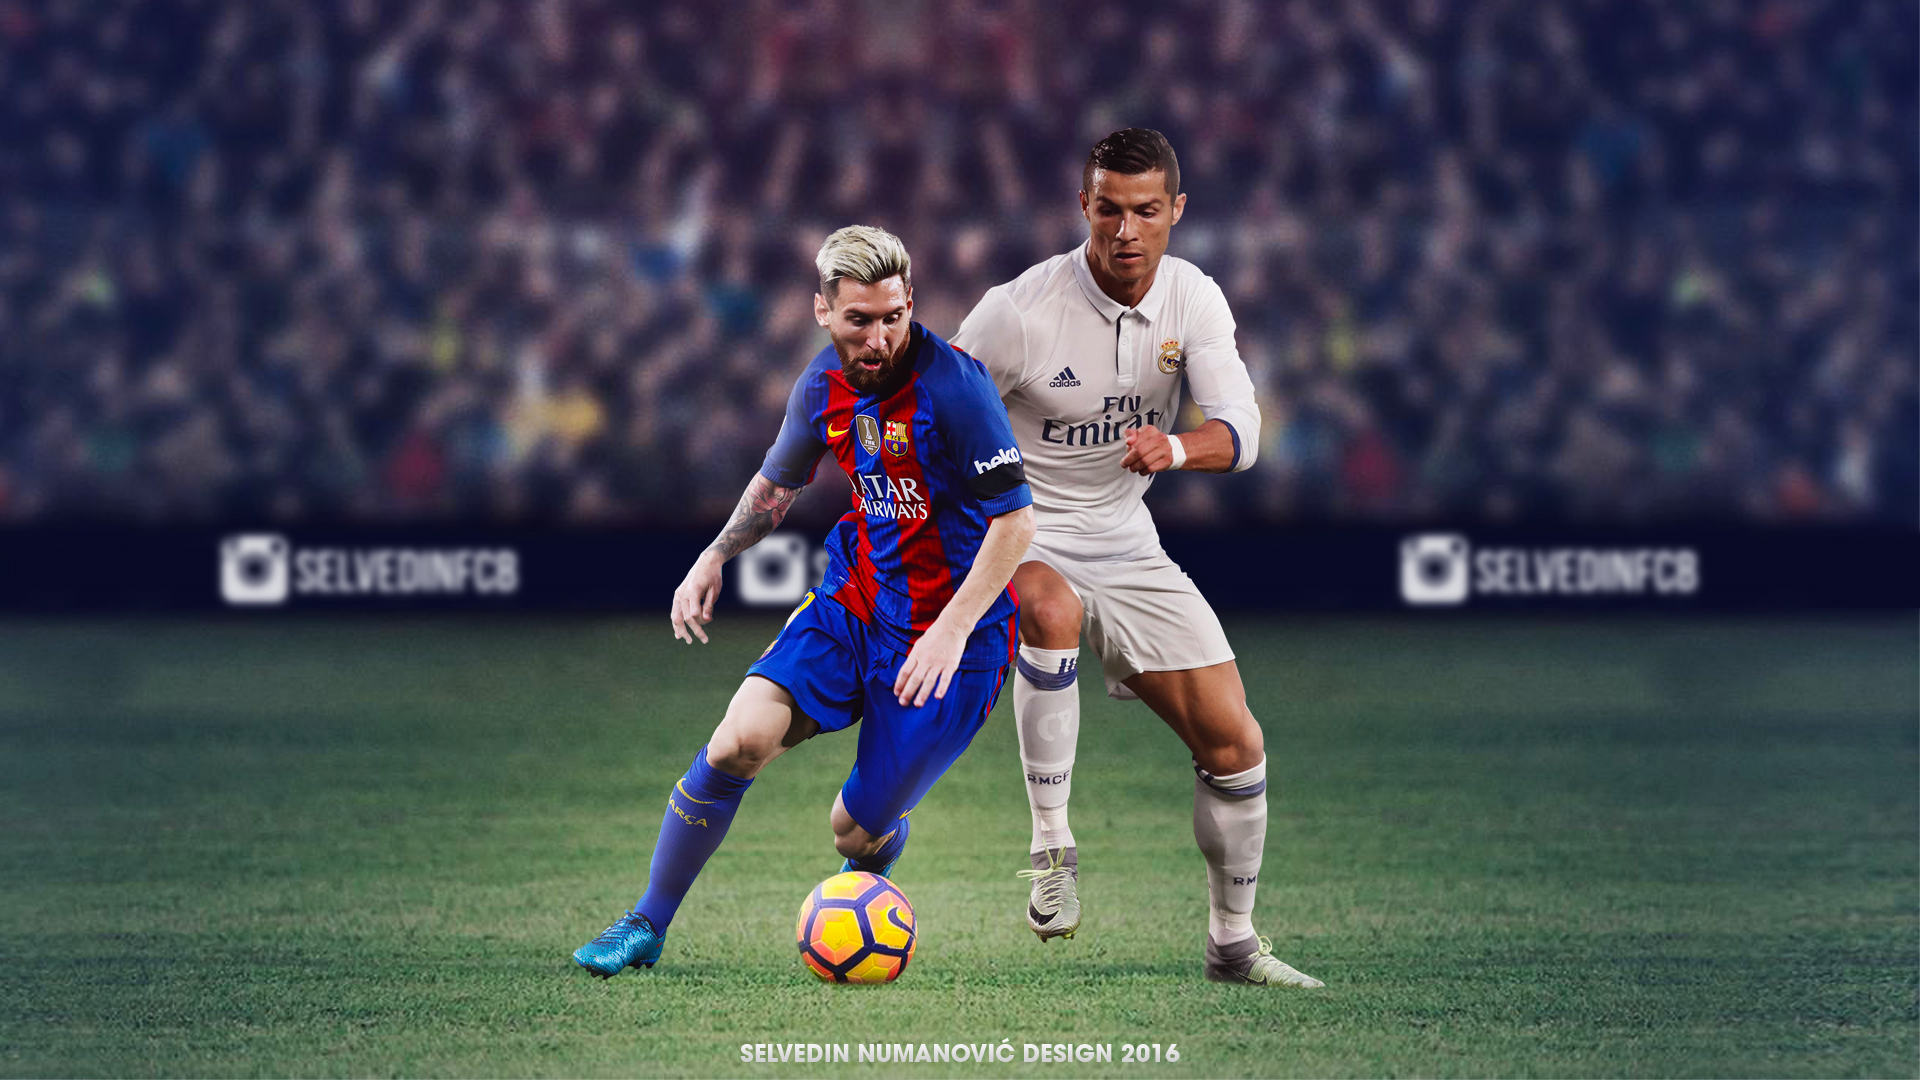 Cristiano Ronaldo vs Messi Wallpaper 2018 85 pictures